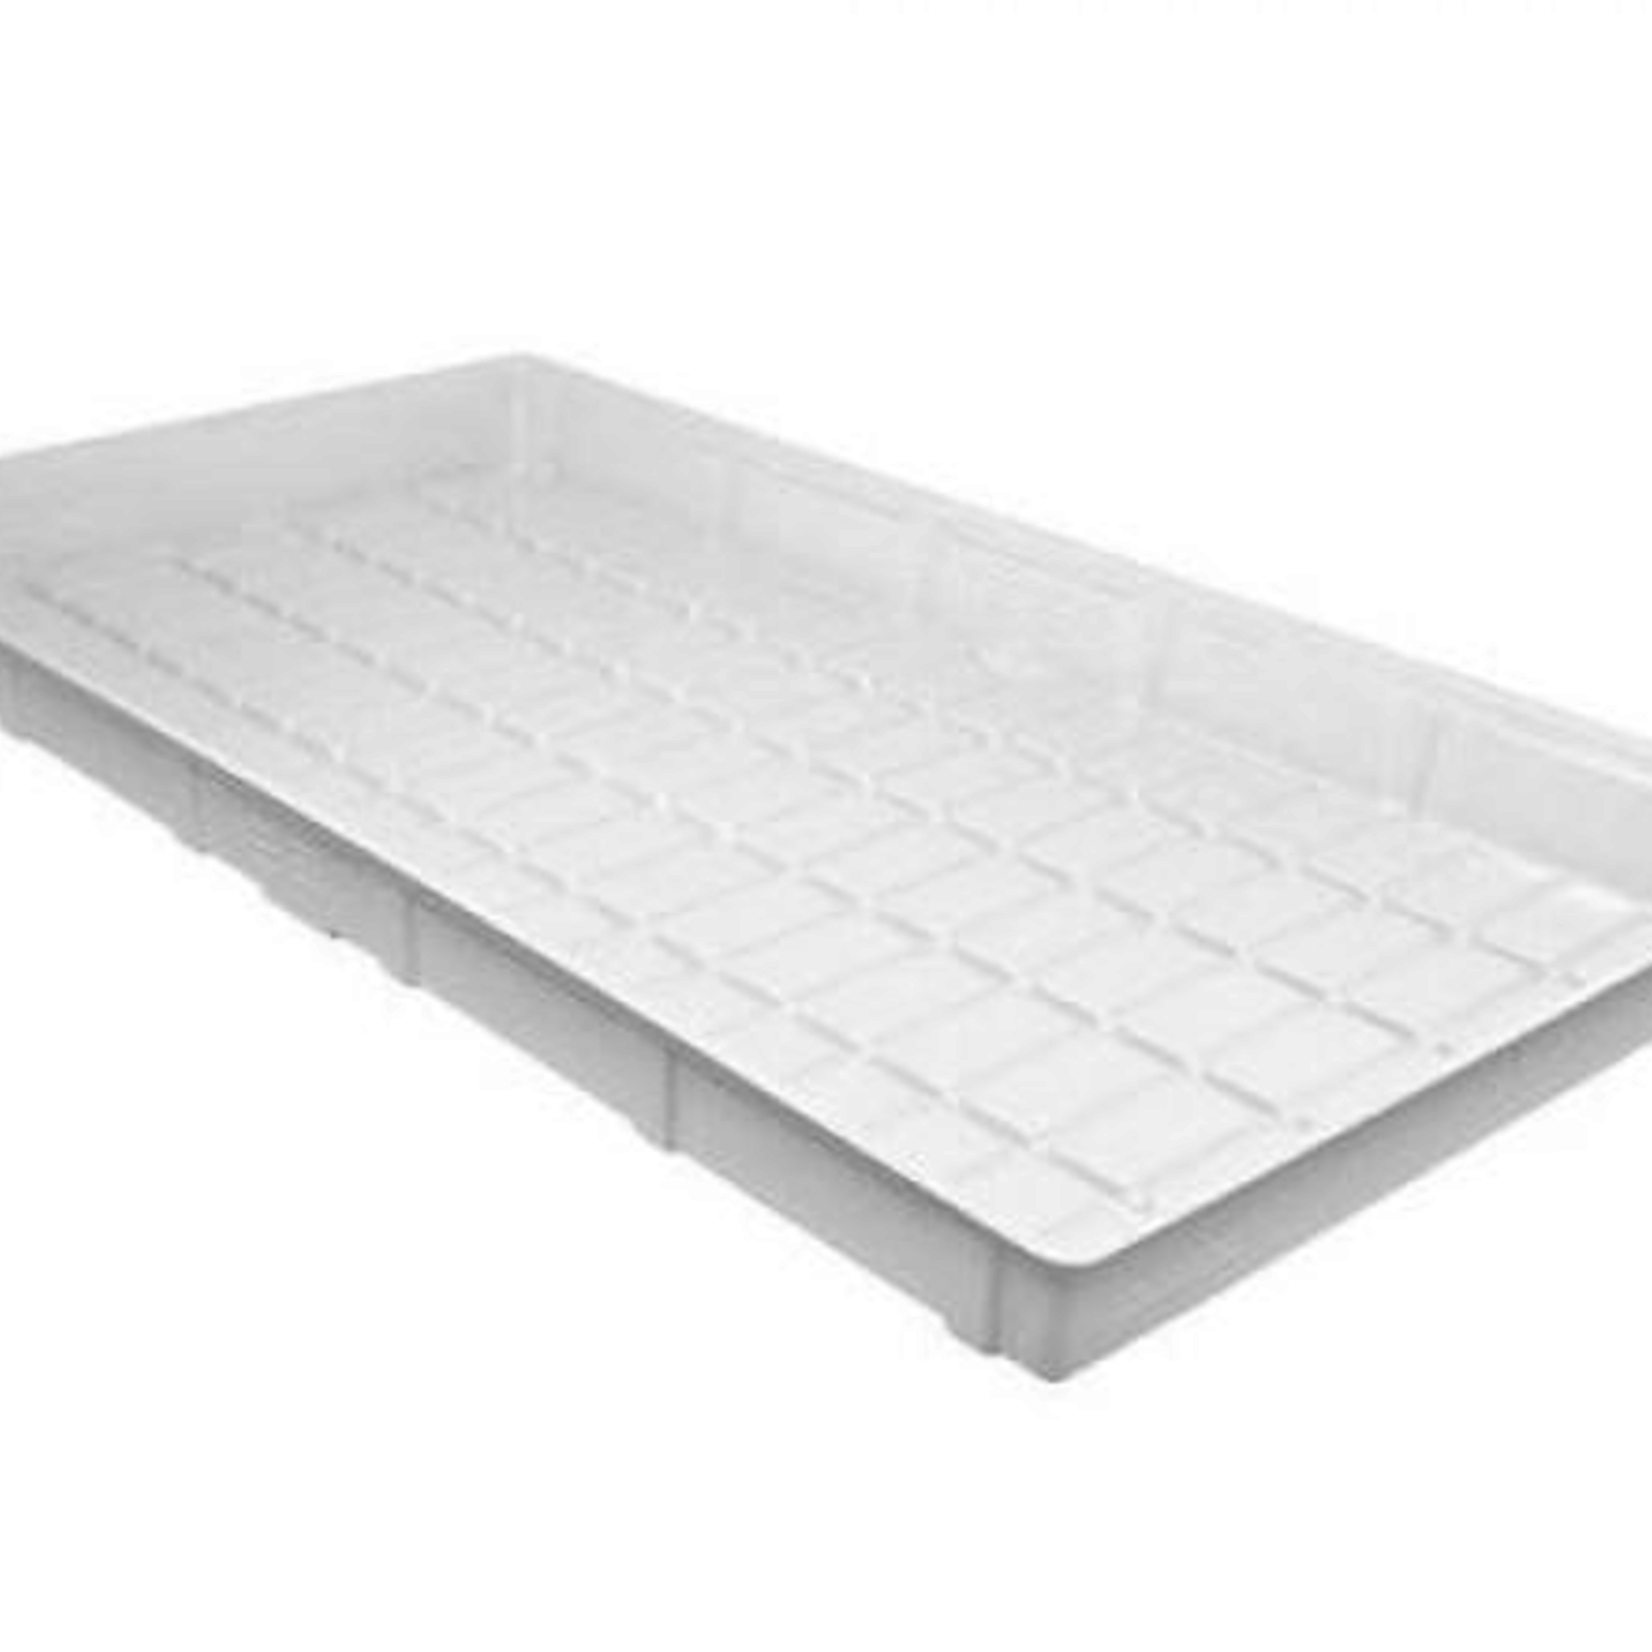 Duralastics Duralastics ID Tray 4 ft x 8 ft - White